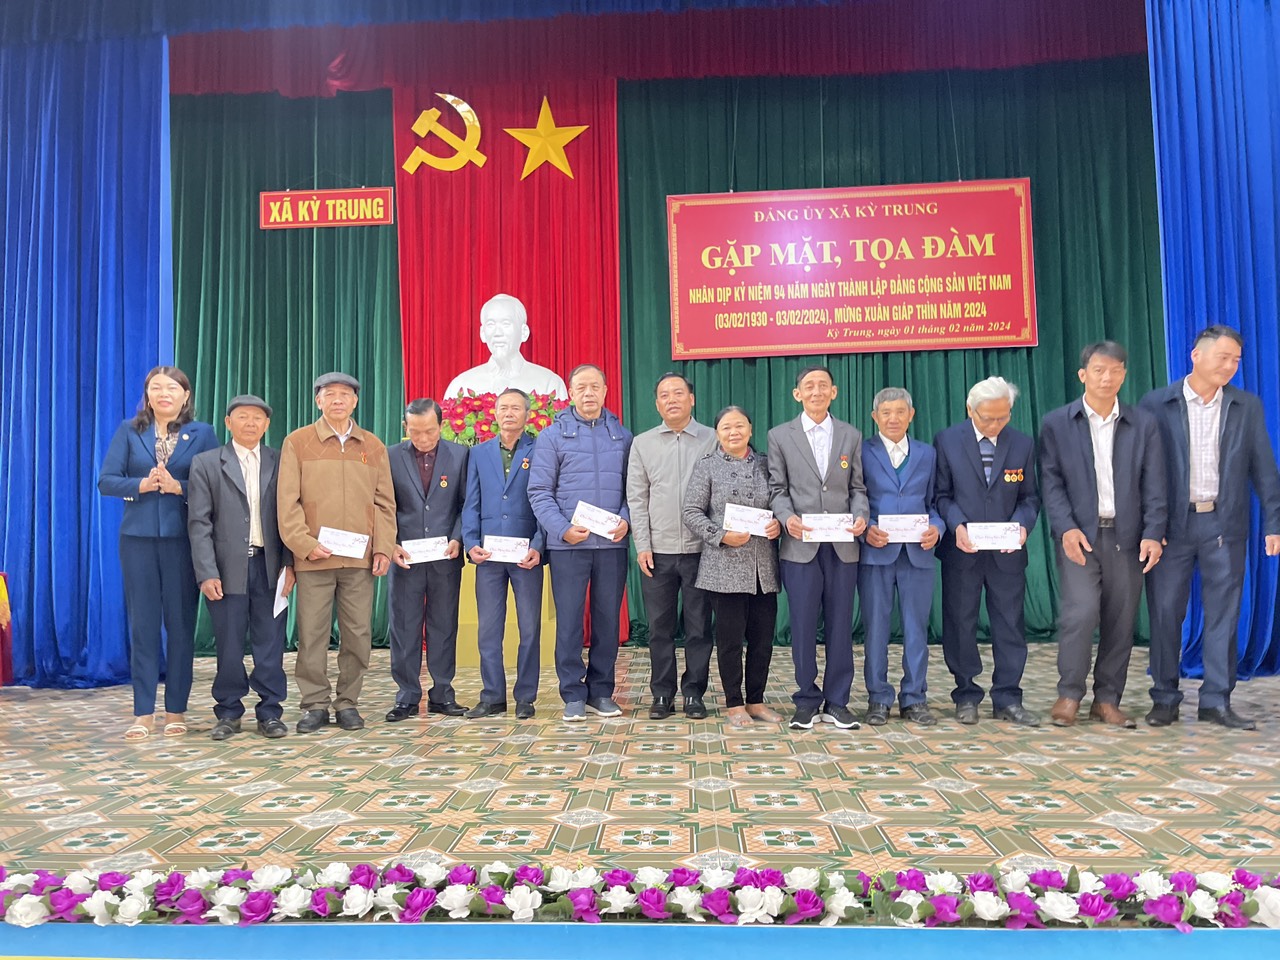 Đảng ủy xã Kỳ Trung tổ chức tọa đàm, gặp mặt nhân kỷ niệm 94 năm ngày thành lập Đảng cộng sản Việt Nam(1930-2024)